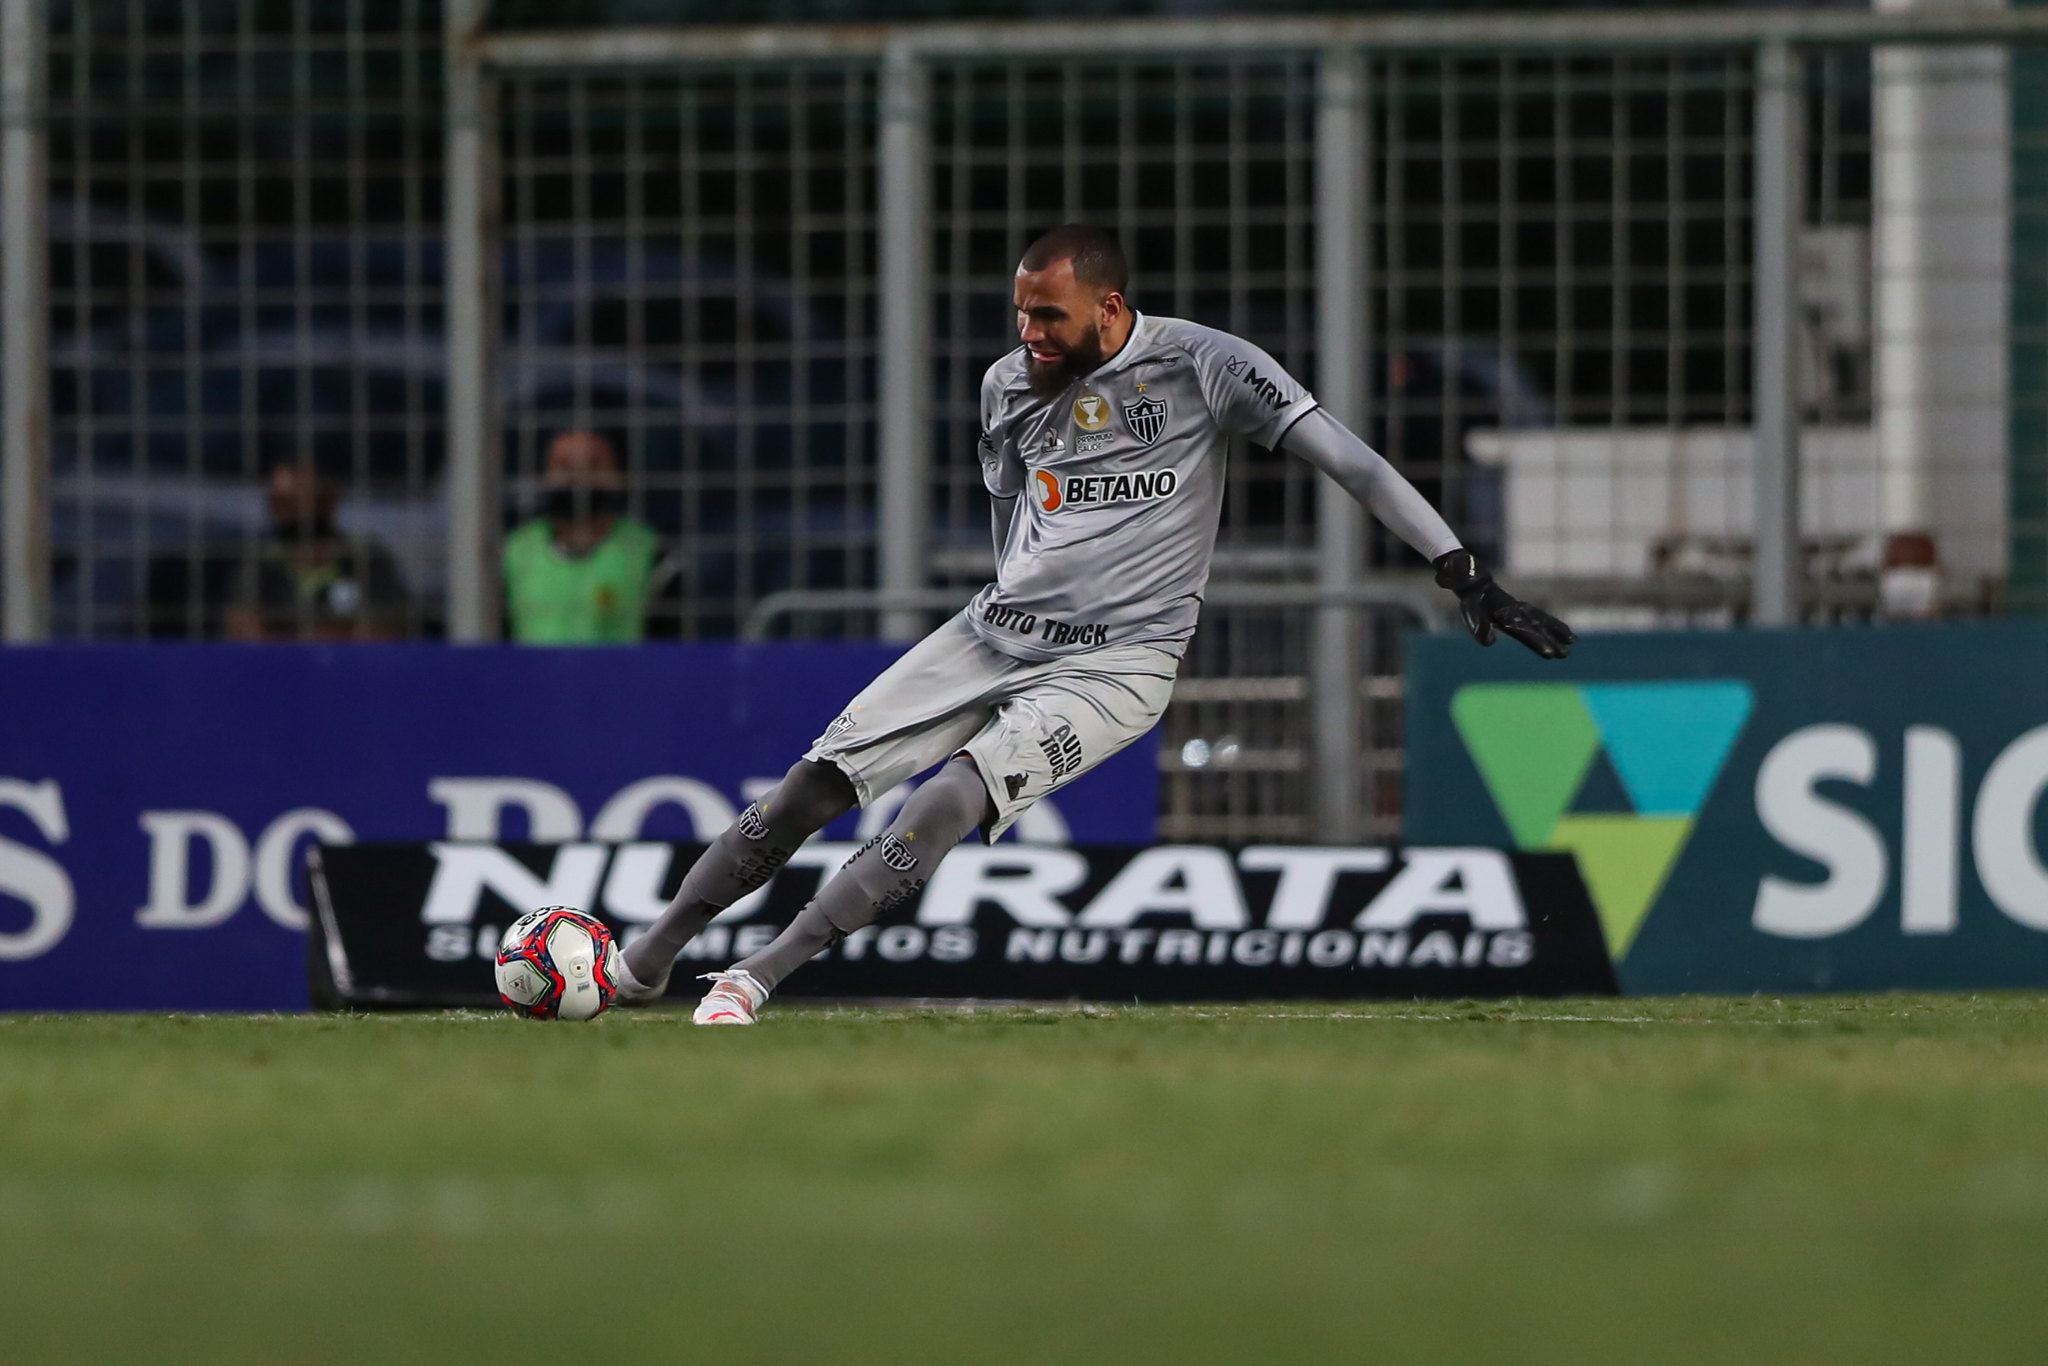 Everson incorpora papel de 'maestro' e é irretocável em passes no Campeonato Mineiro